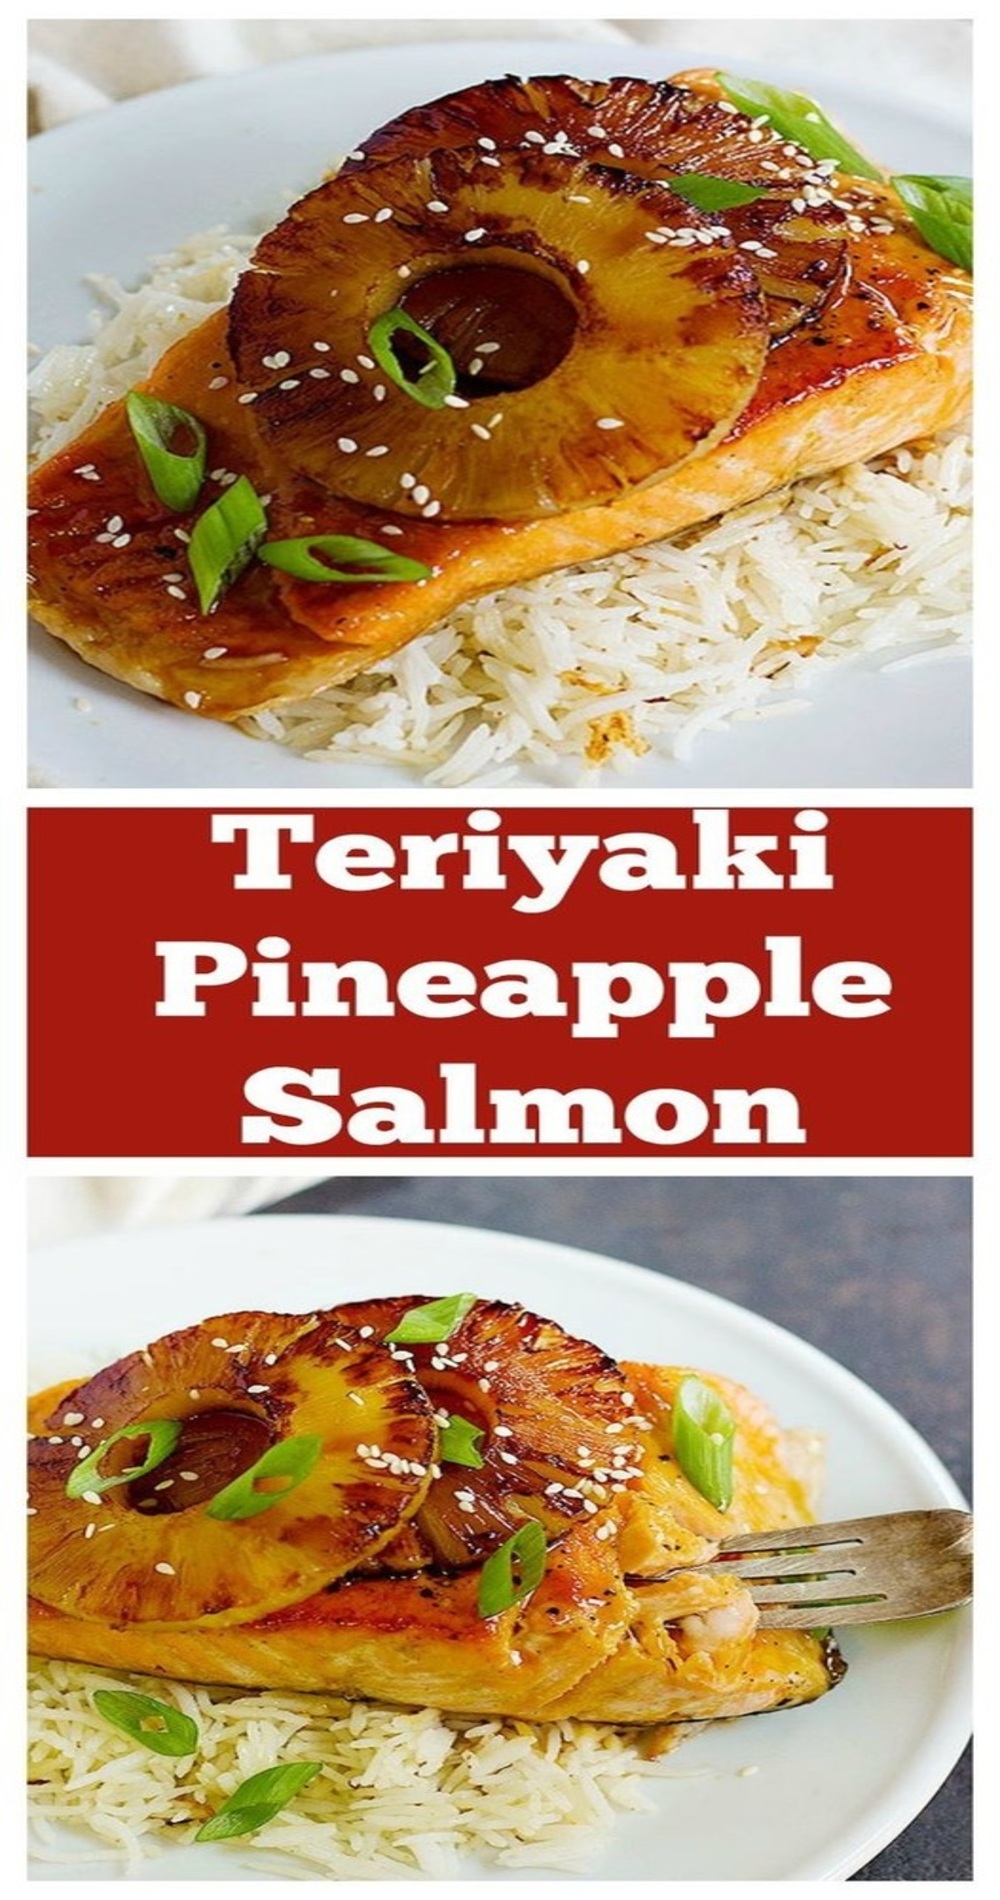 Teriyaki Pineapple Salmon